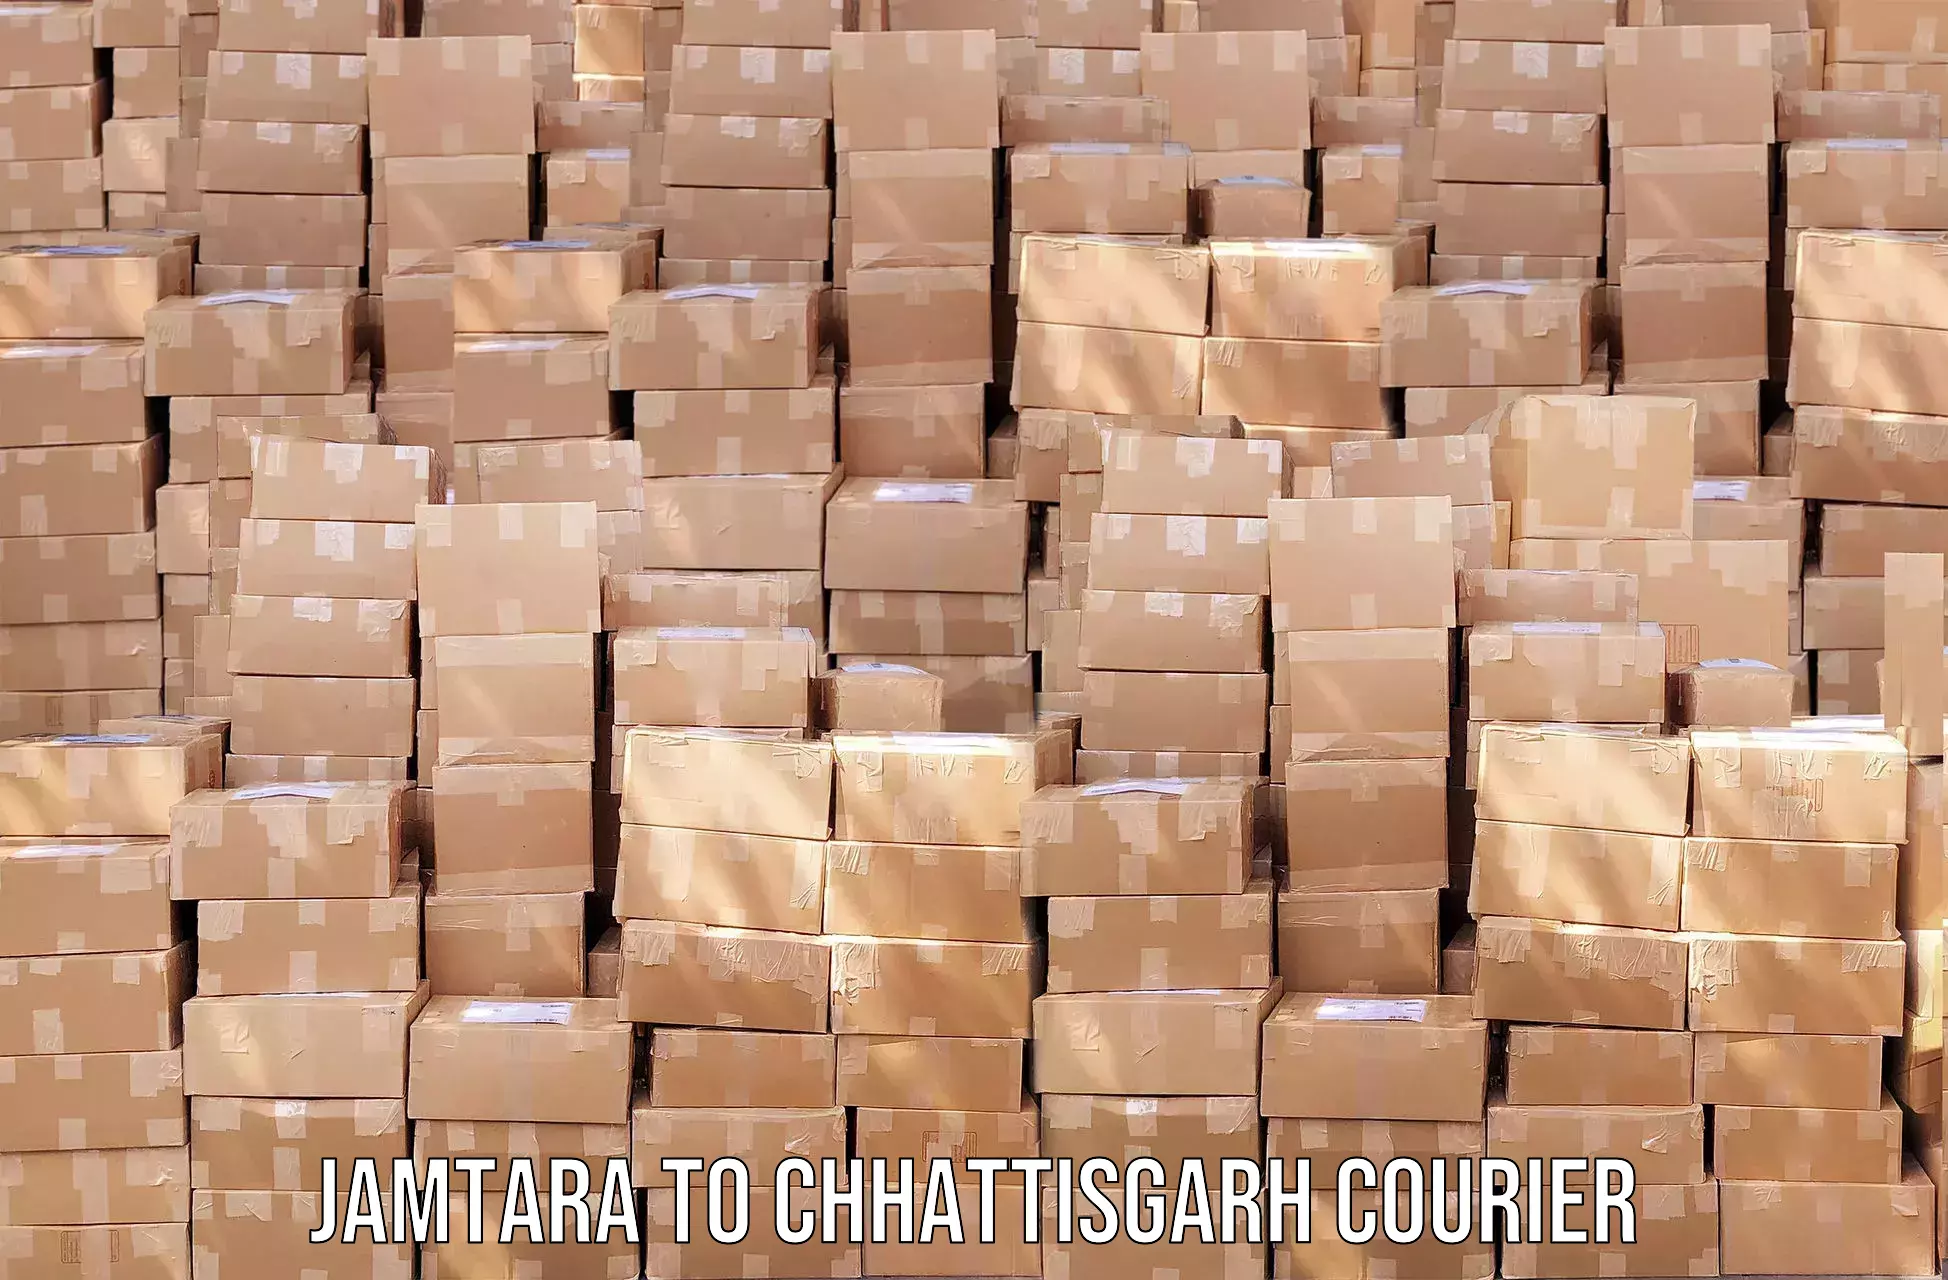 Courier service comparison in Jamtara to Chhattisgarh